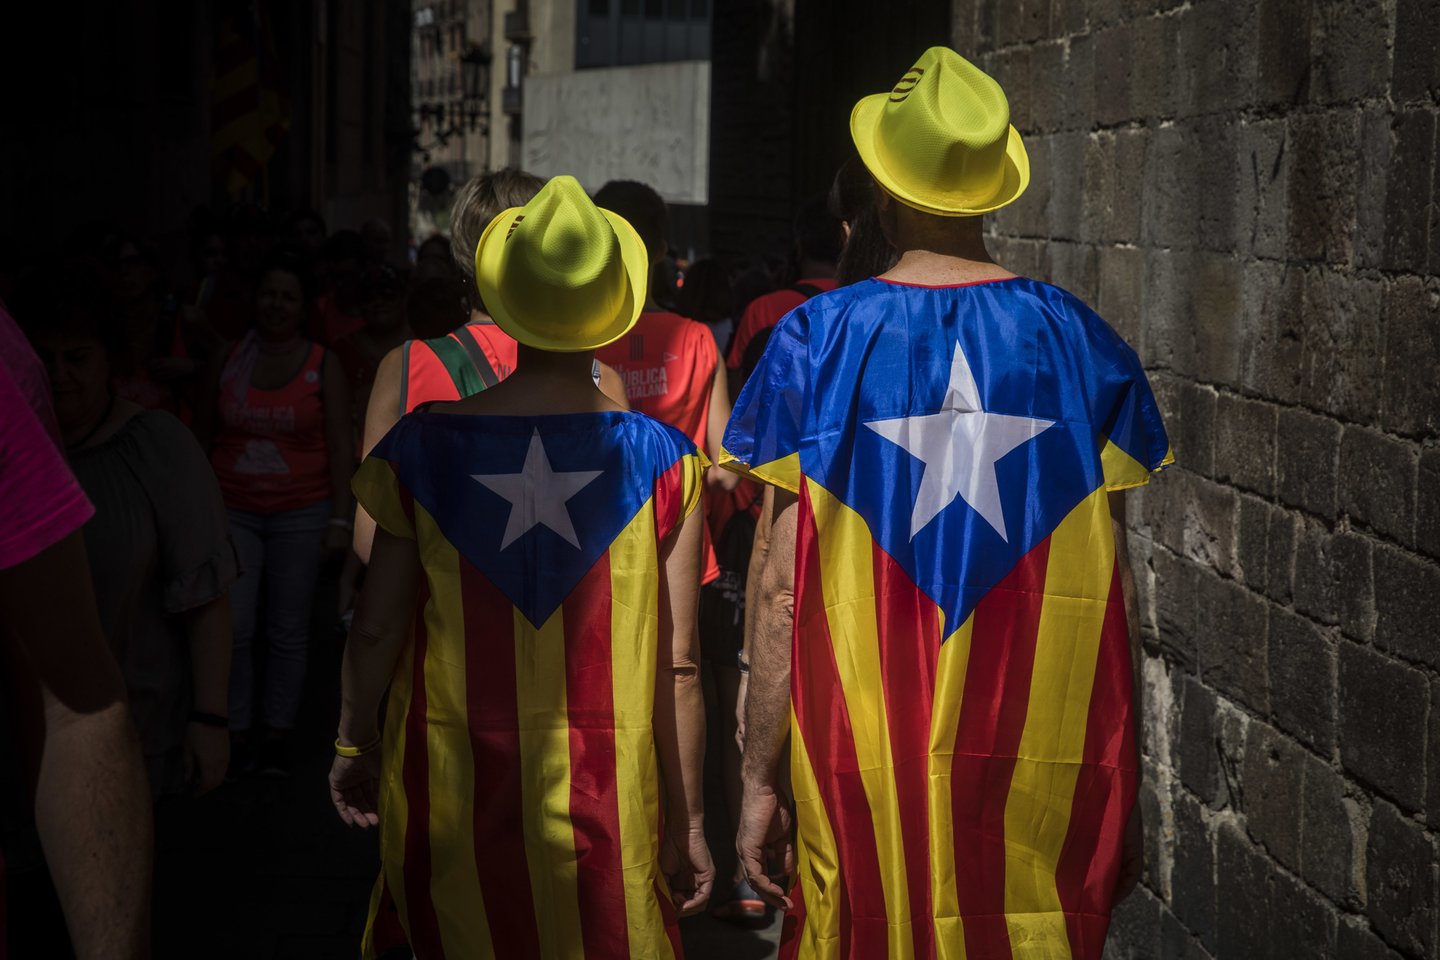 Ispanija iškvietė Belgijos ambasadorių dėl šios šalies flamandų regiono parlamento pirmininko išsiųsto laiško kalinamai Katalonijos separatistei Carme Forcadell, trečiadienį pranešė vienas diplomatinis šaltinis.<br>AP nuotr.